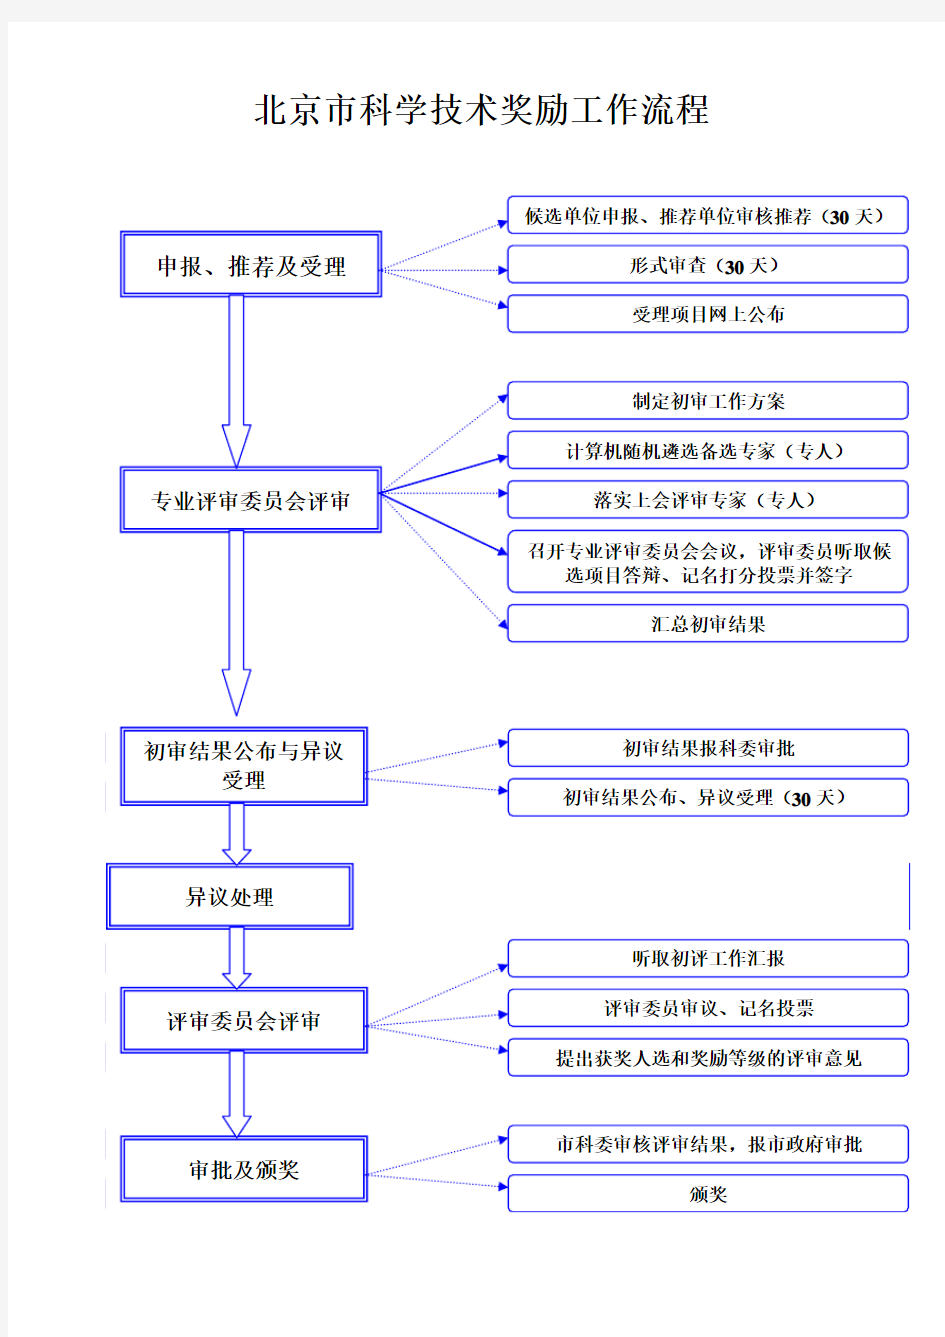 北京市科学技术奖励工作流程图